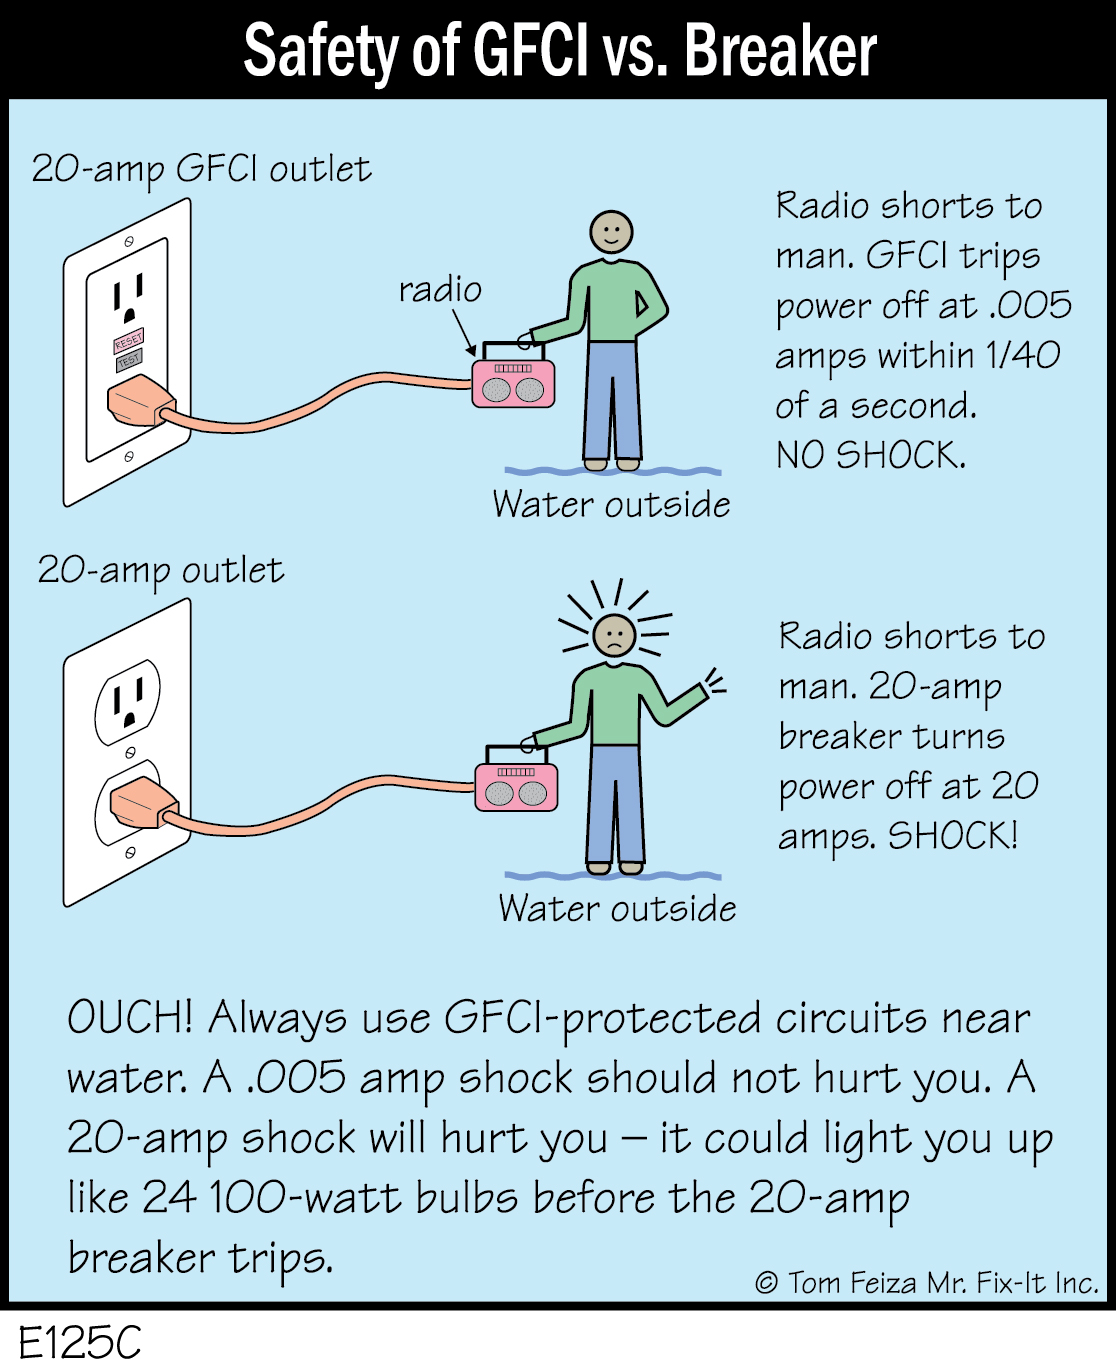 E125C - Safety of GFCI vs. Breaker